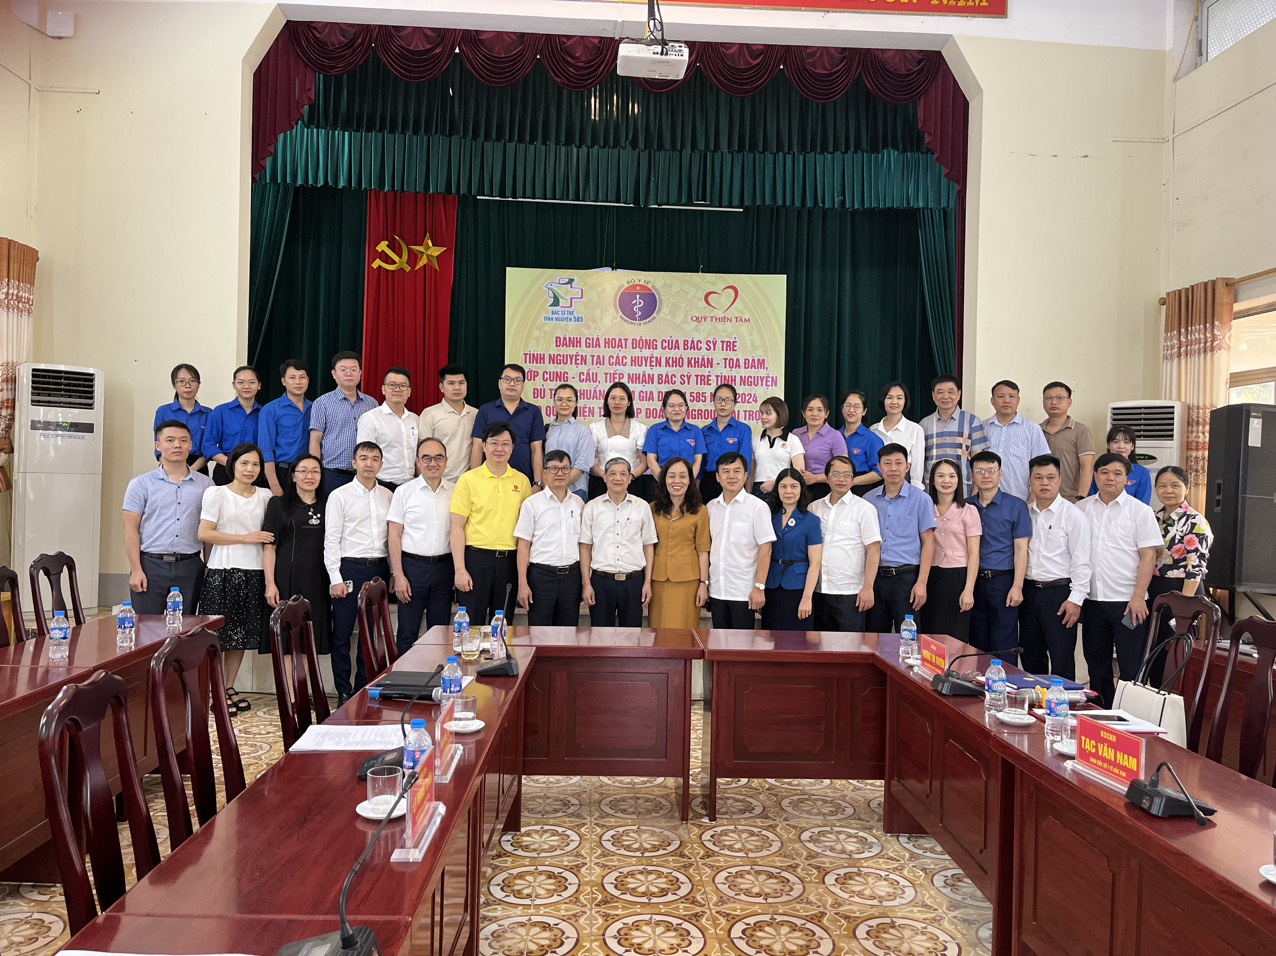 Đánh giá hoạt động của bác sĩ trẻ tình nguyện tại các huyện khó khăn, tọa đàm, phỏng vấn các bác sĩ đủ điều kiện tham gia Dự án 585 tại các tỉnh Cao Bằng, Lạng Sơn, Bắc  Giang và Bắc  Kạn